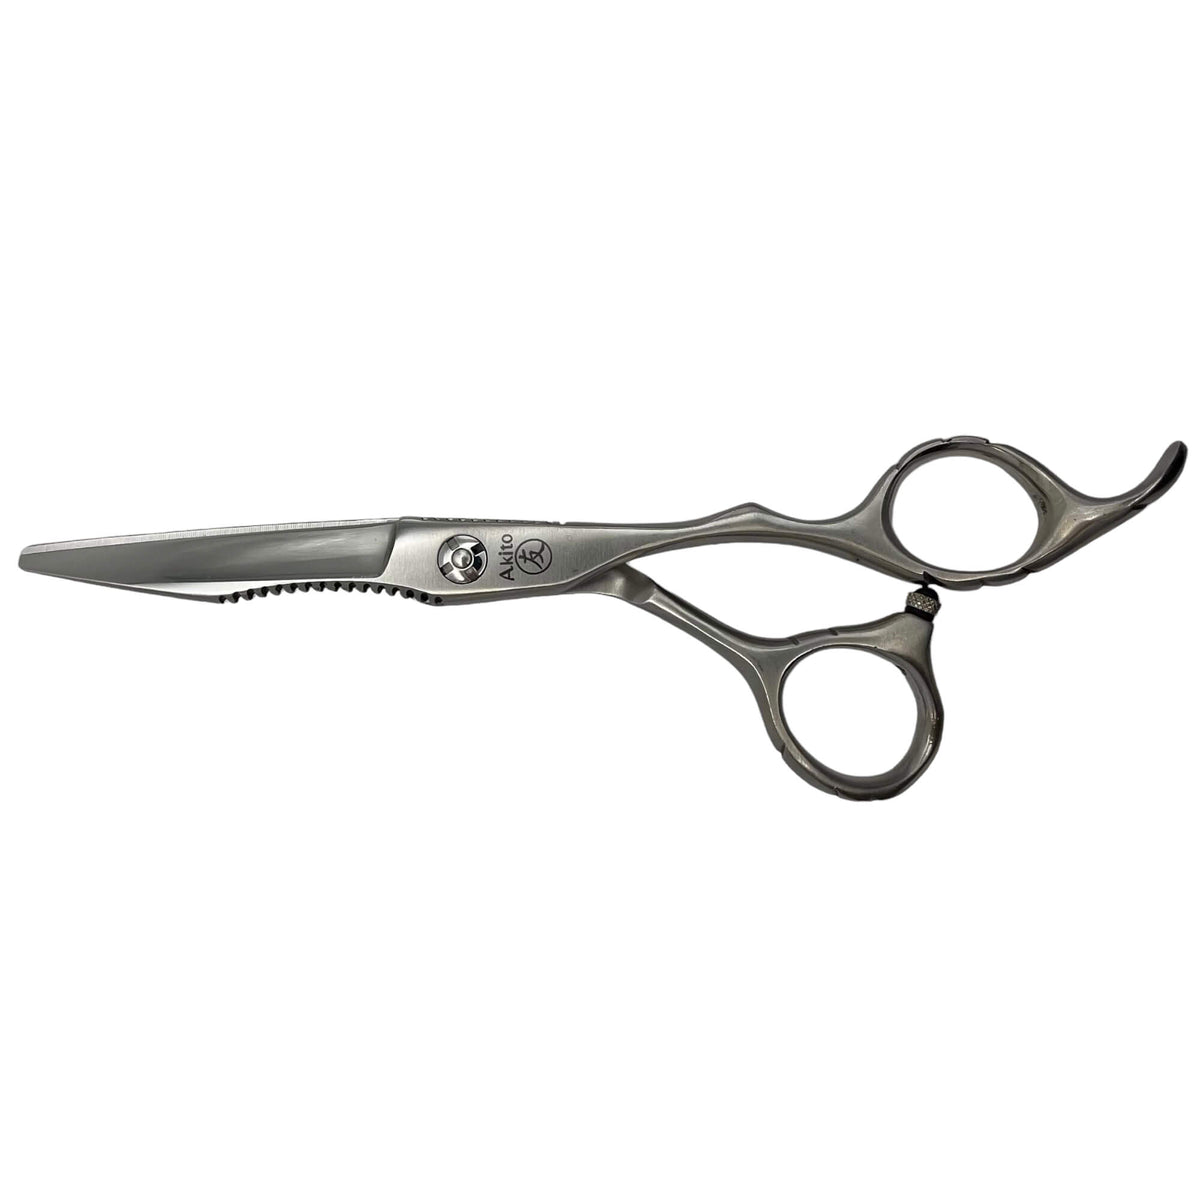 X-5 silver scissors